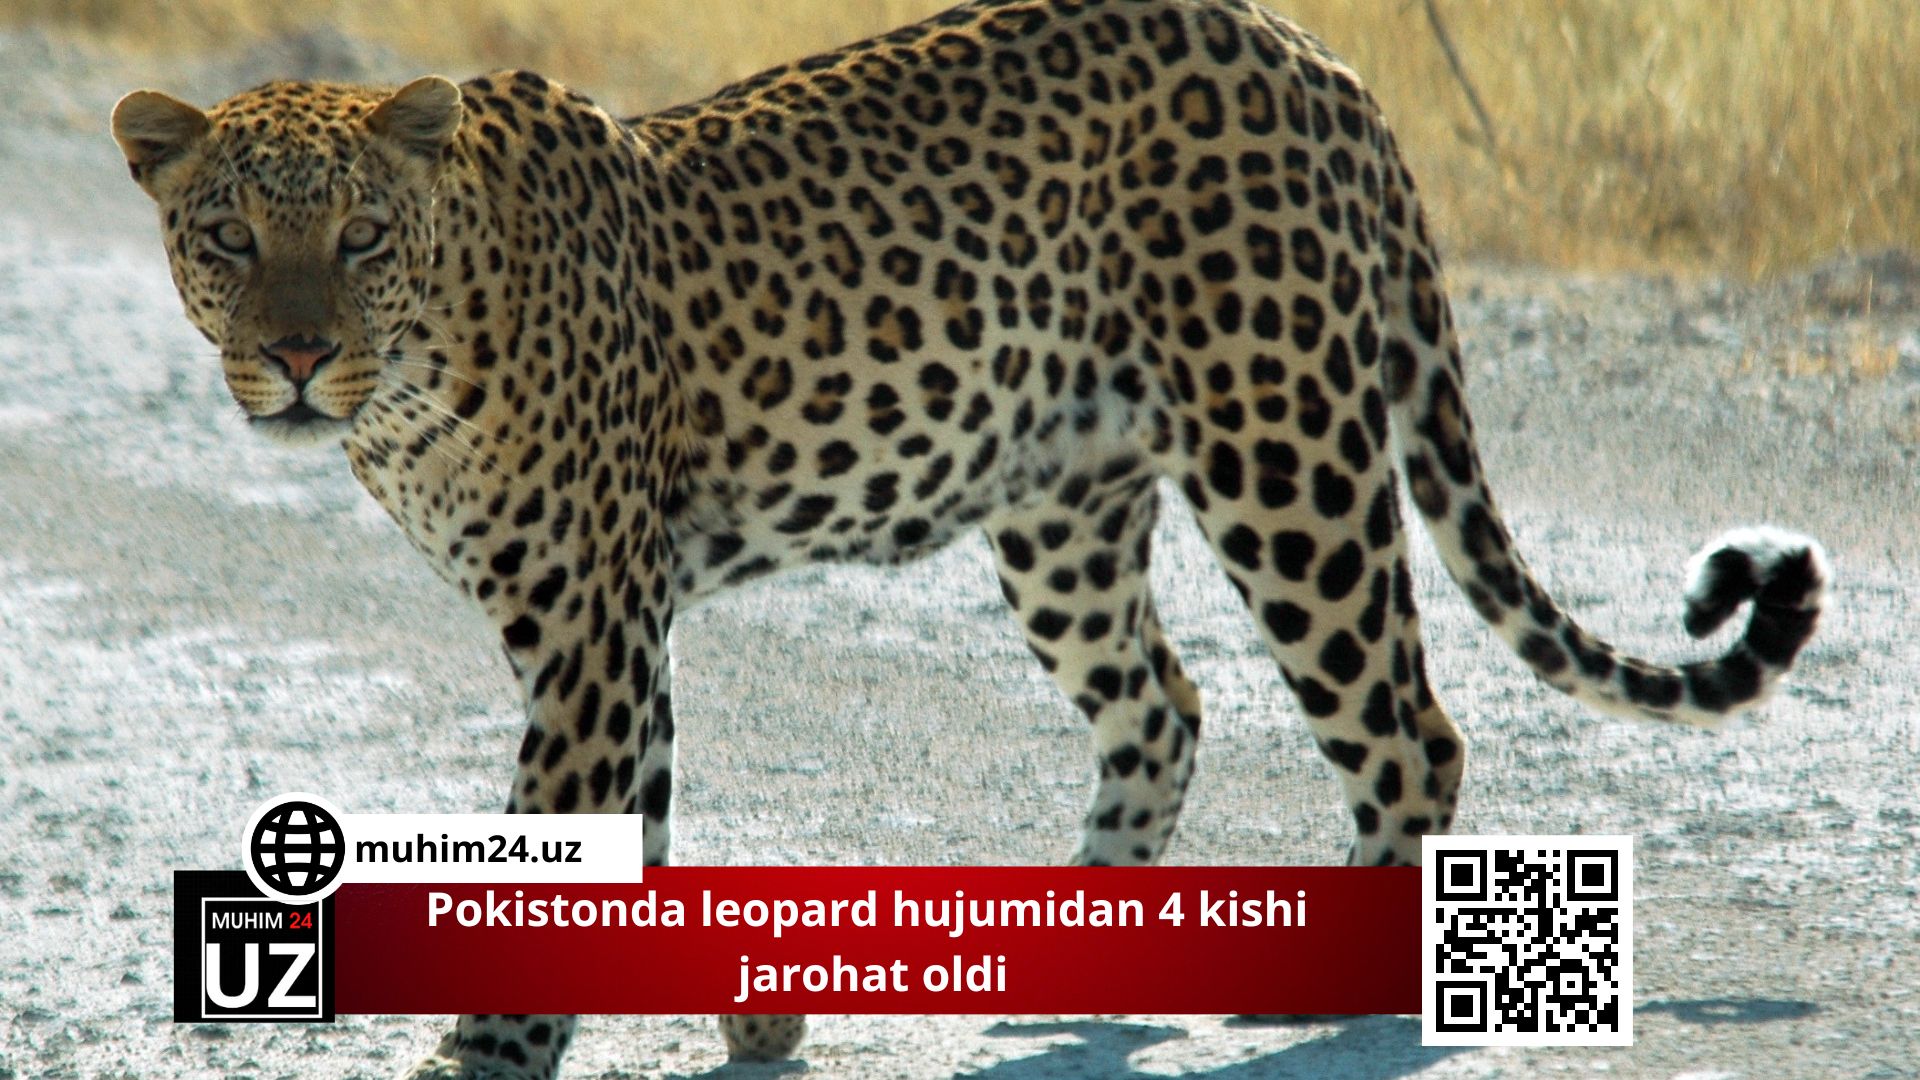 Pokistonda leopard hujumidan 4 kishi jarohat oldi